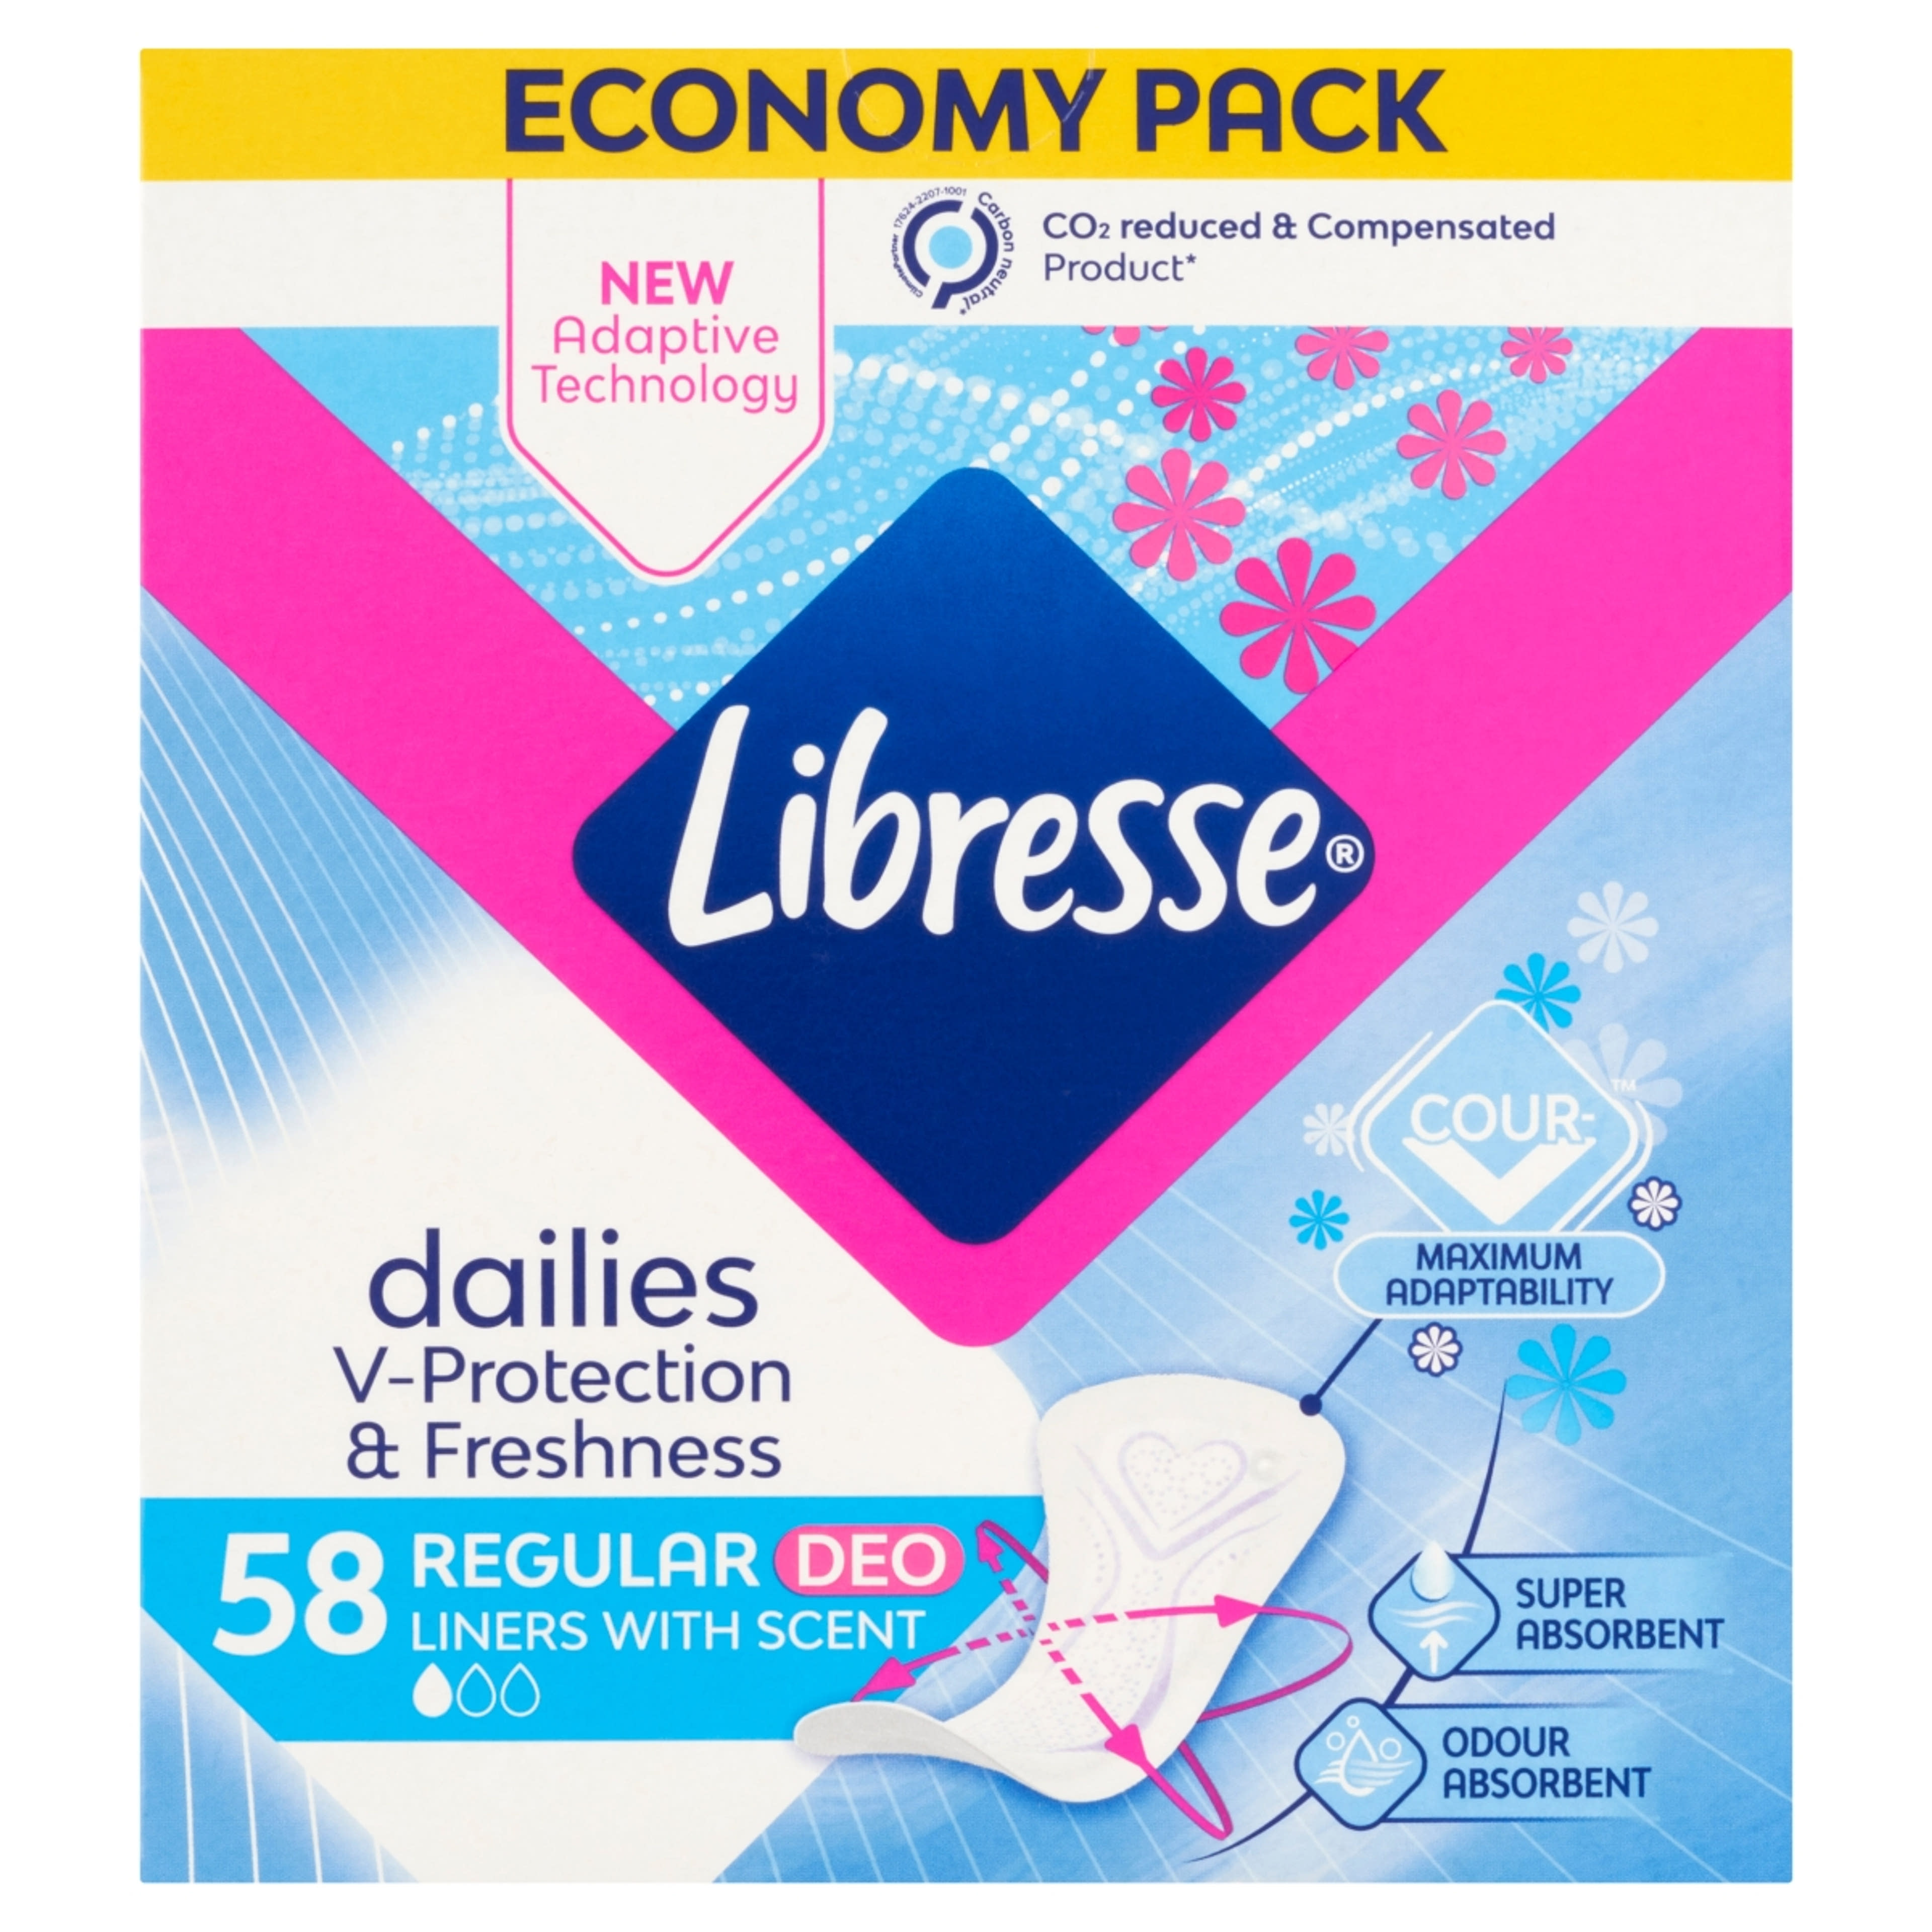 Libresse Normal Deo Fresh tisztasági betét - 58 db